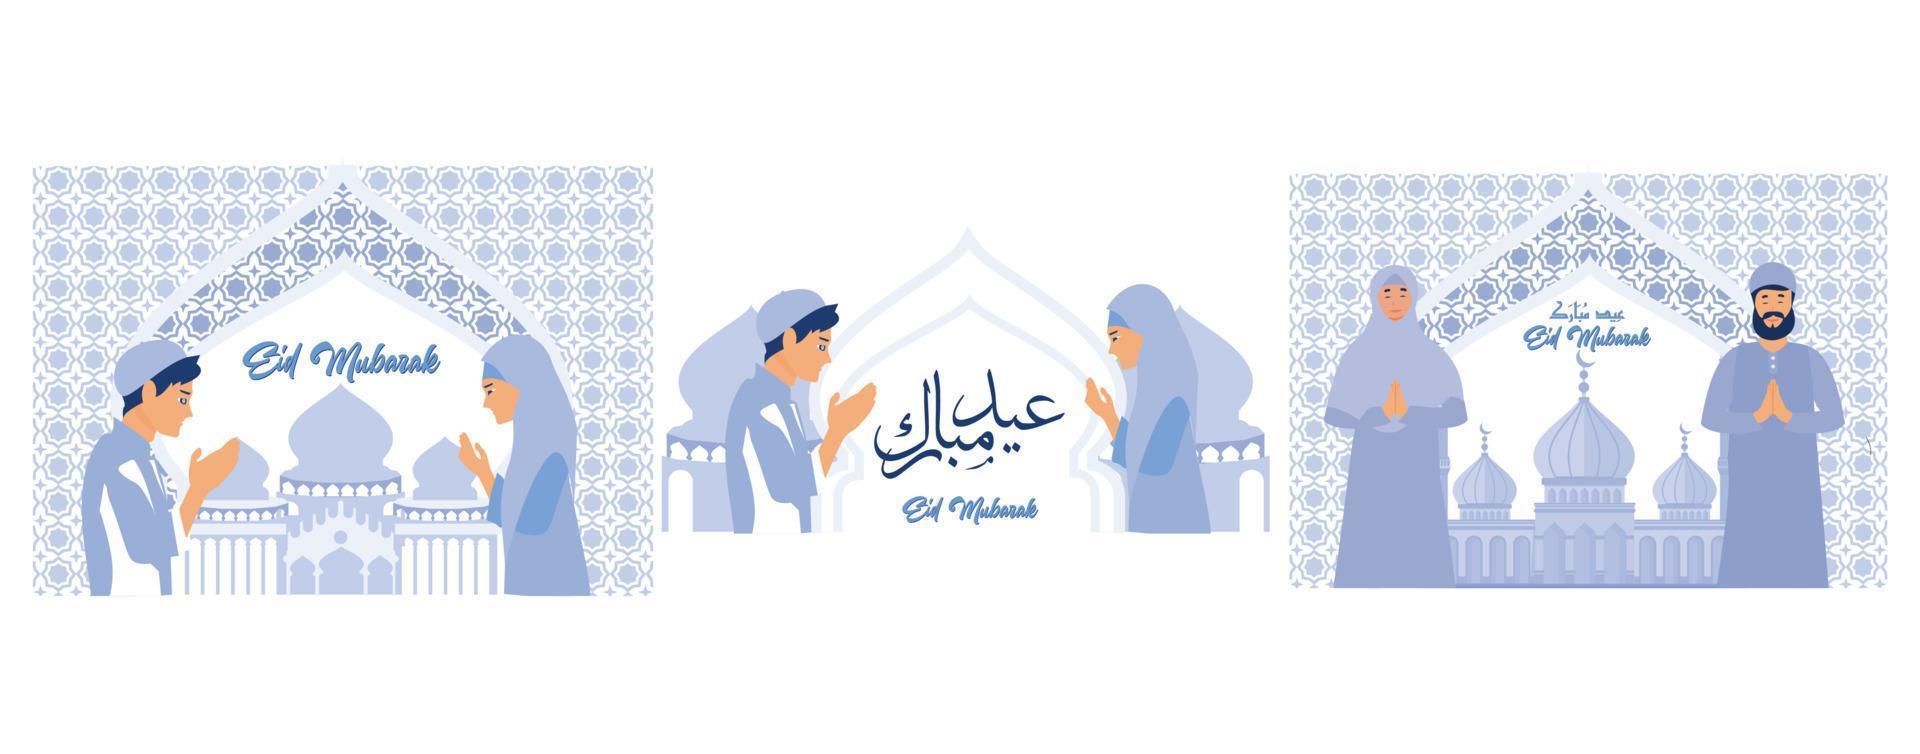 Moslem Menschen verzeihen jeder andere, Ramadan kareem Konzept, einstellen eben Vektor modern Illustration